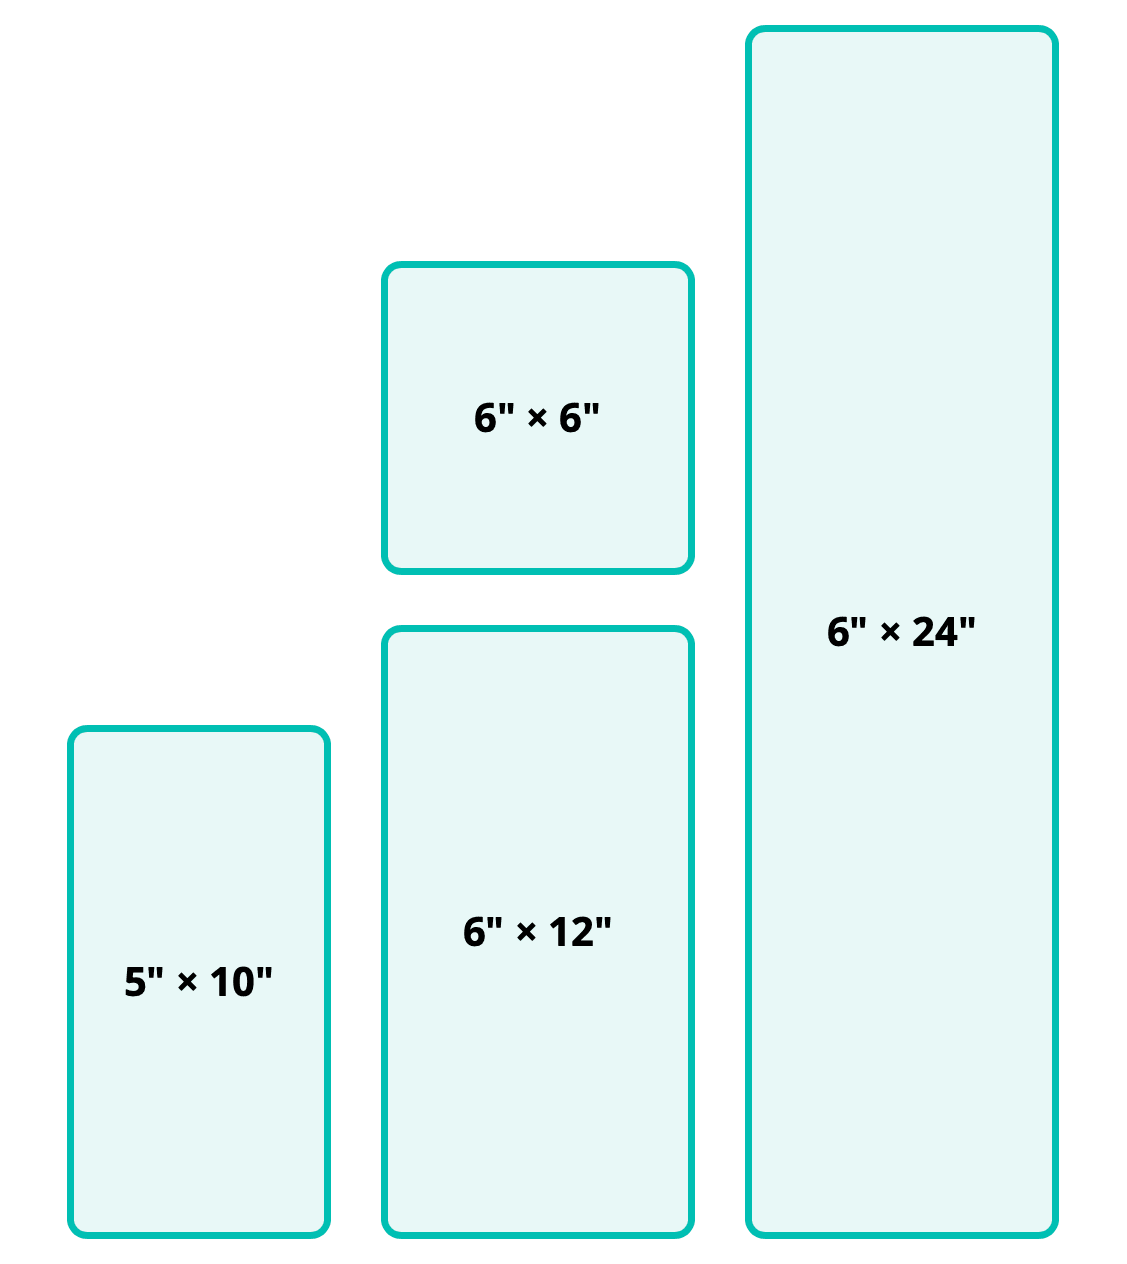 die sizes: 5" × 10", 6" × 6", 6" × 12"